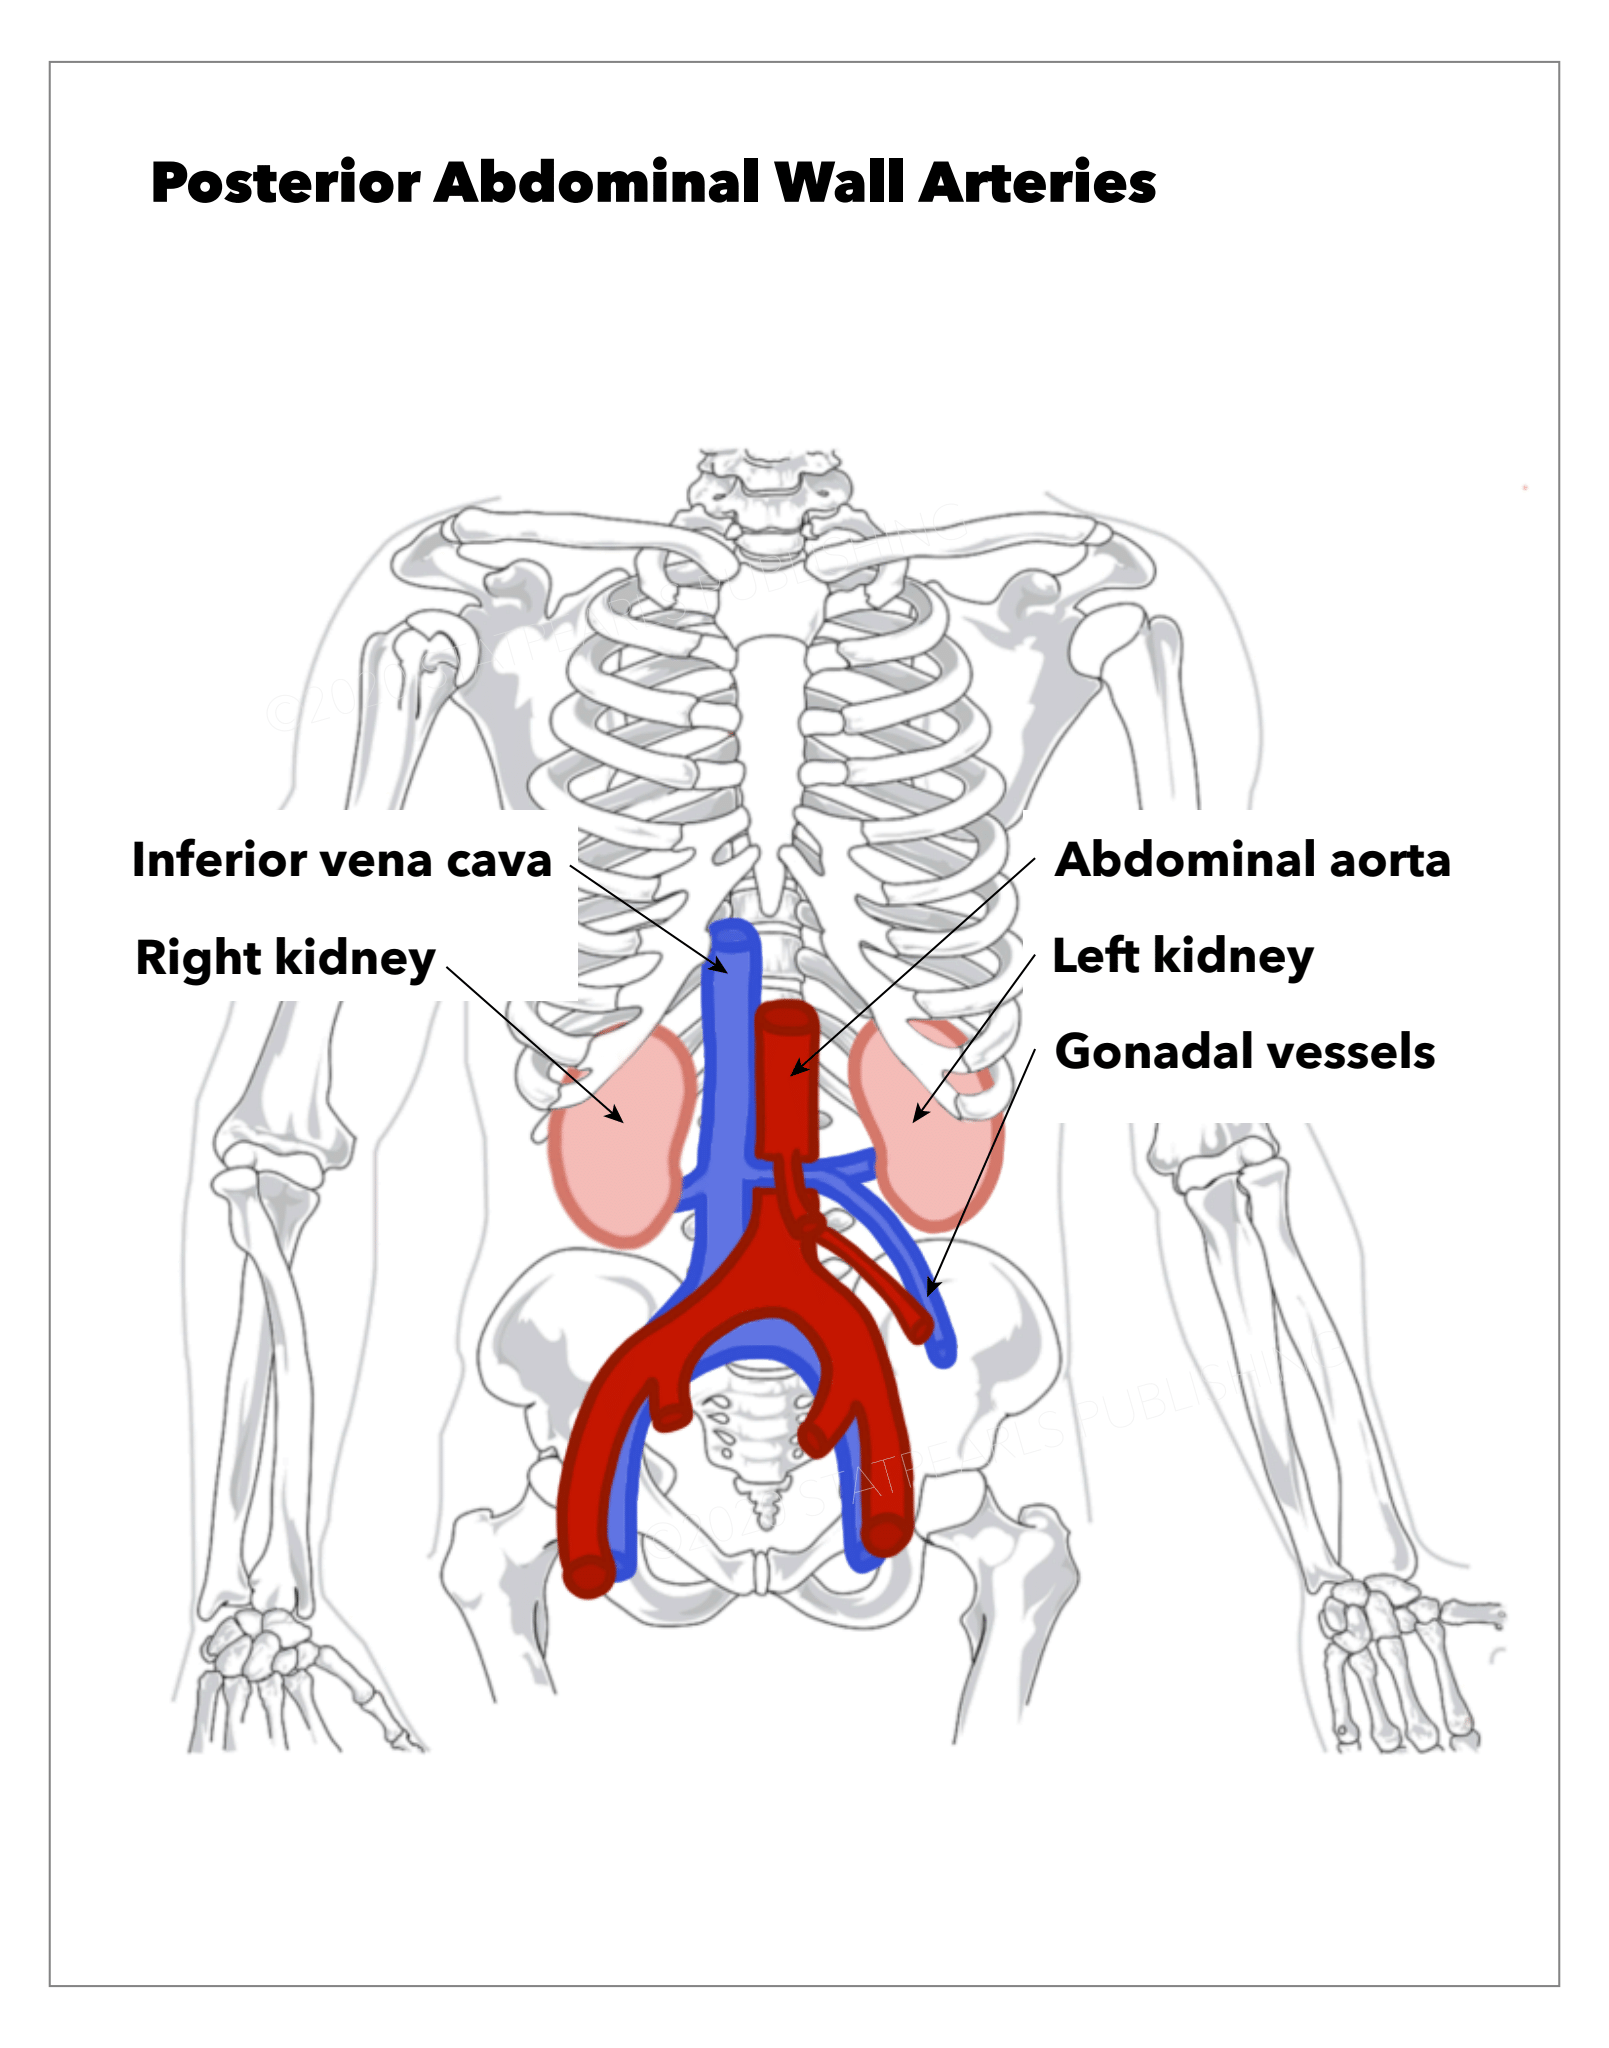 Posterior Abdominal Wall Arteries, Inferior vena cava, Abdominal aorta, Right kidney, Left kidney, Gonadal vessels